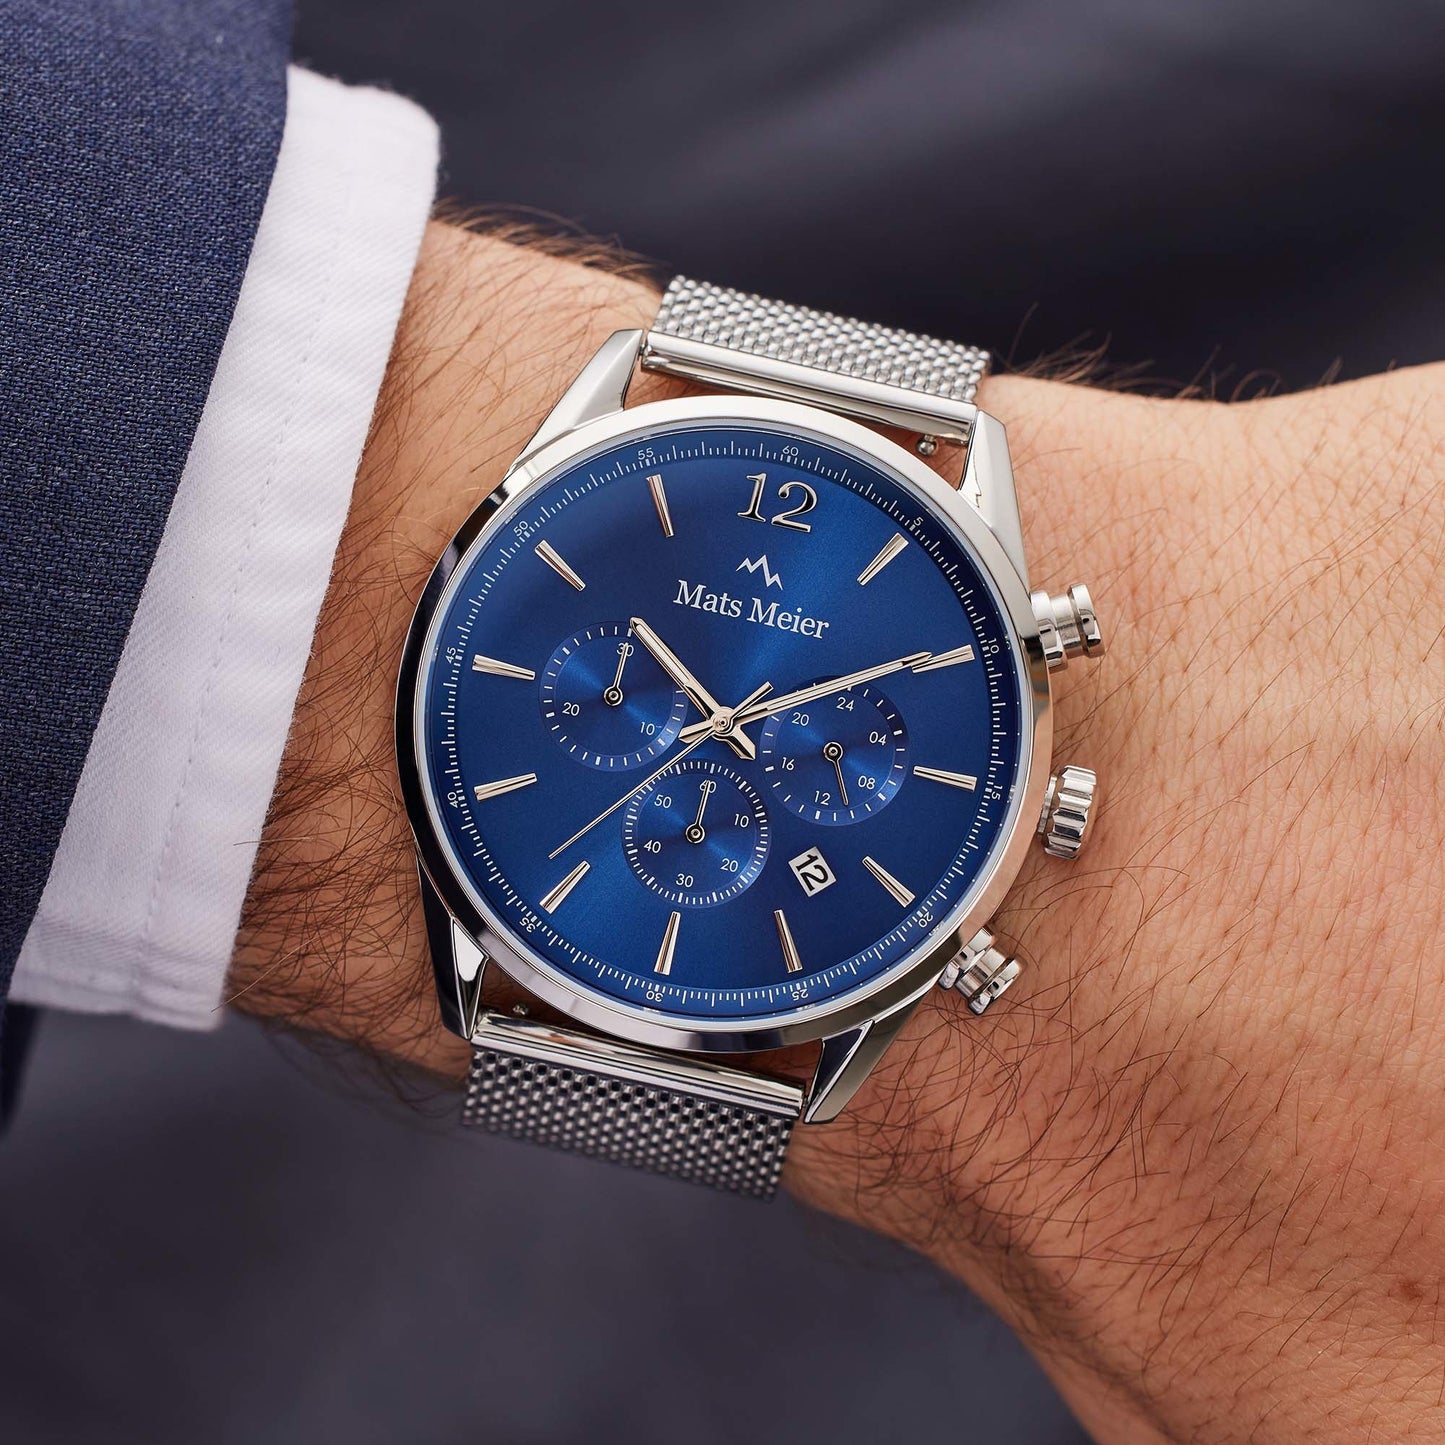 Grand Cornier montre chronographe bleu / maille couleur argent